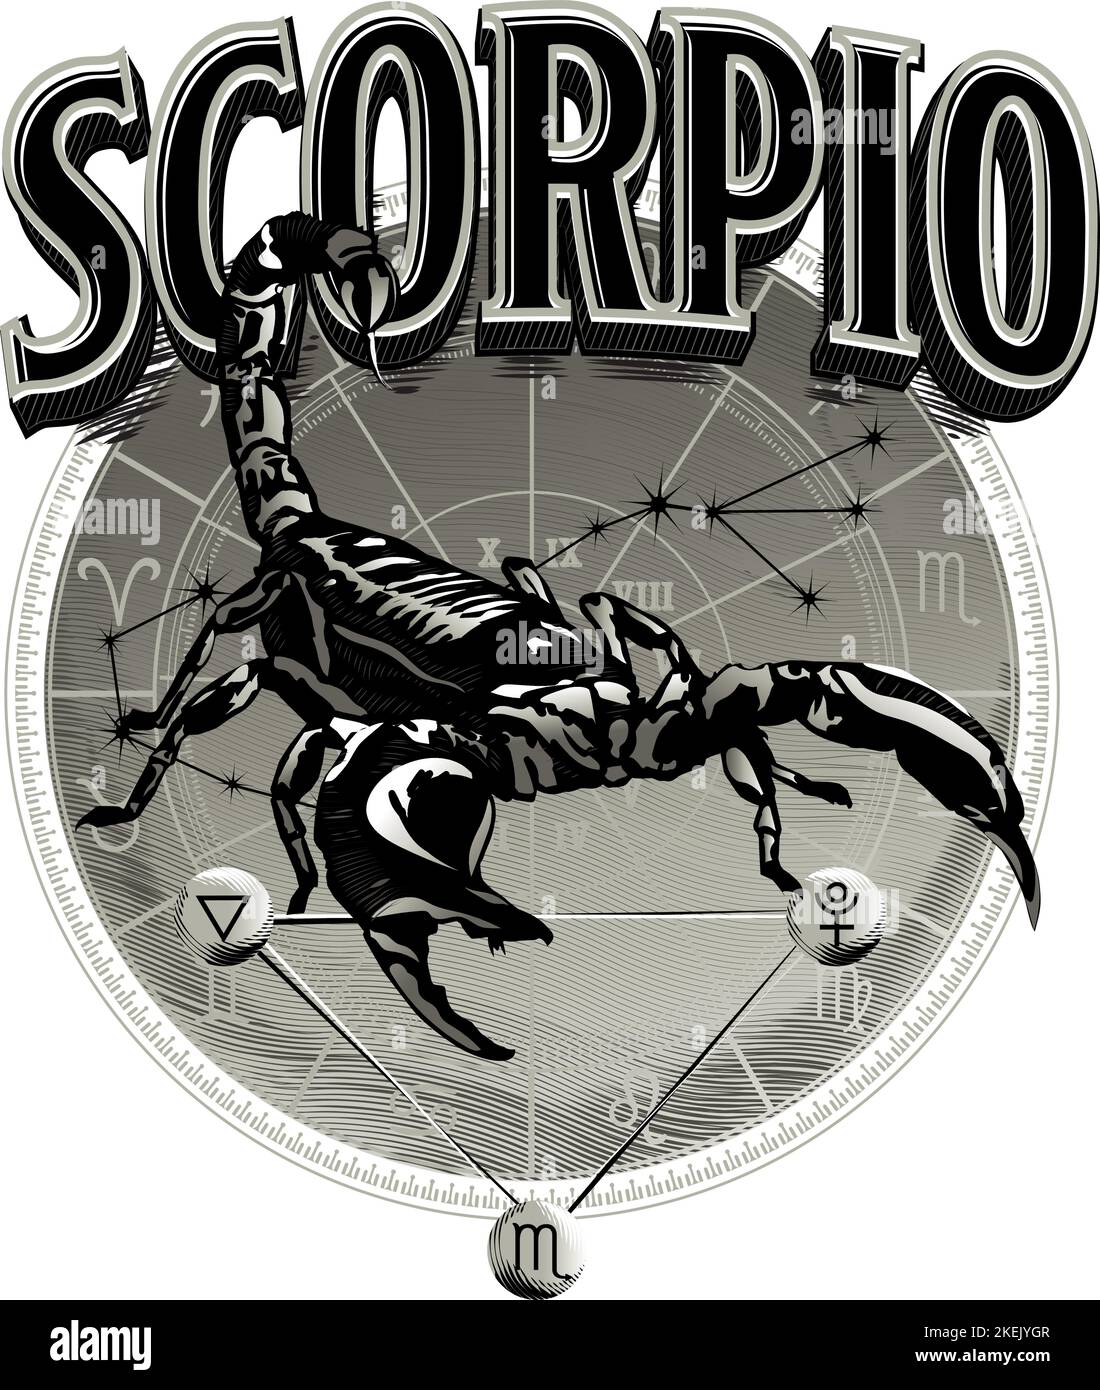 Scorpio Stock Vector Images - Alamy